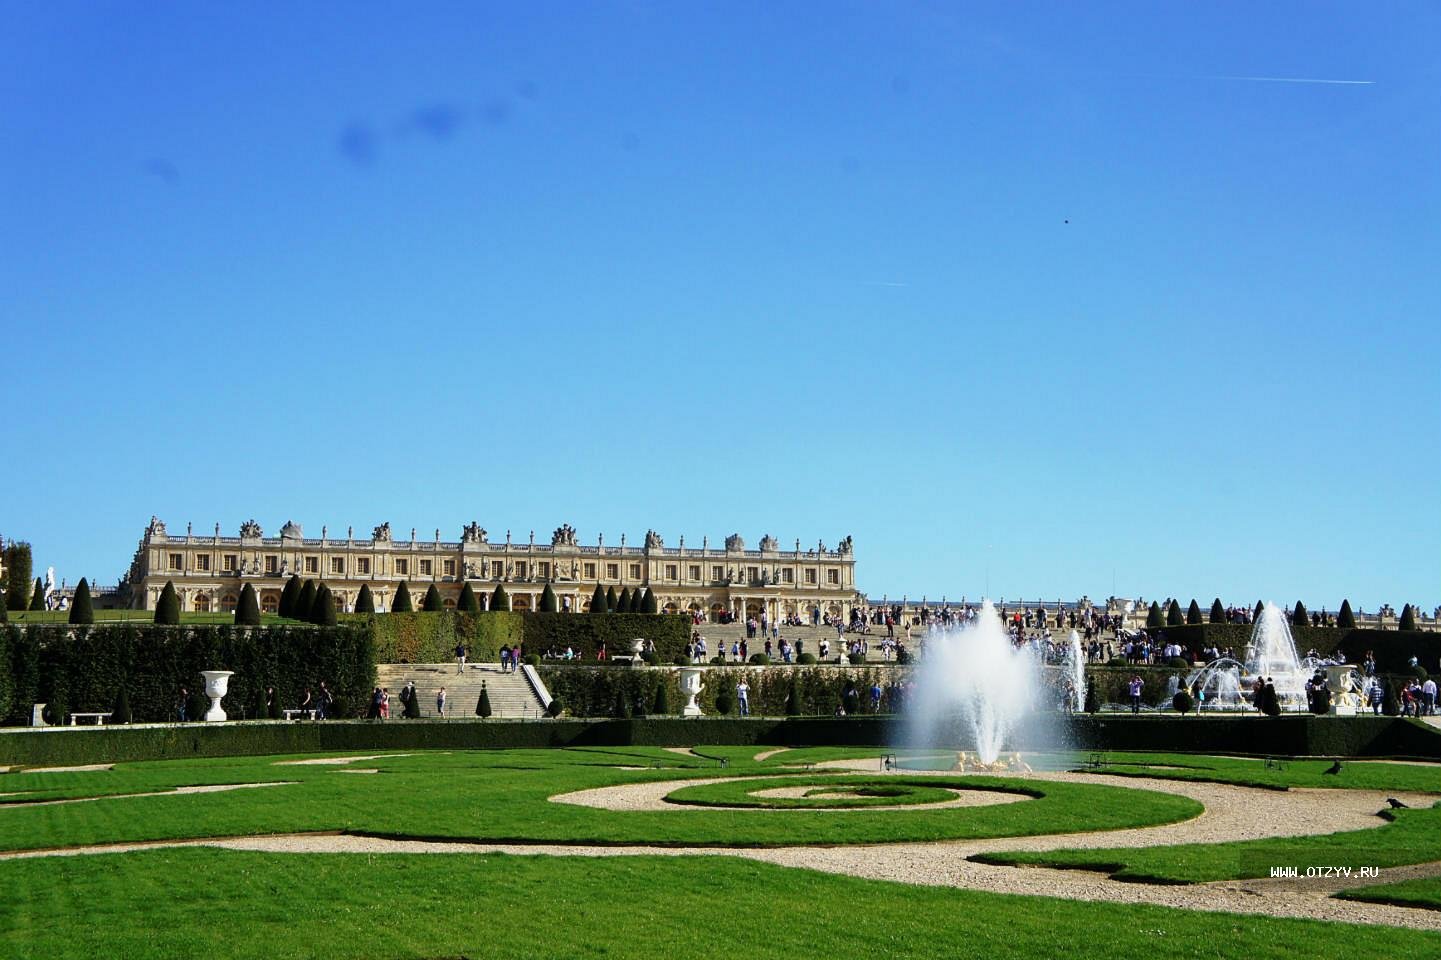 Замок версаль. Версальский дворцово-парковый комплекс, Франция. Версальский дворец, Версаль дворец Версаля. Дворец и парк в Версале Франция. Королевская резиденция Версаль.